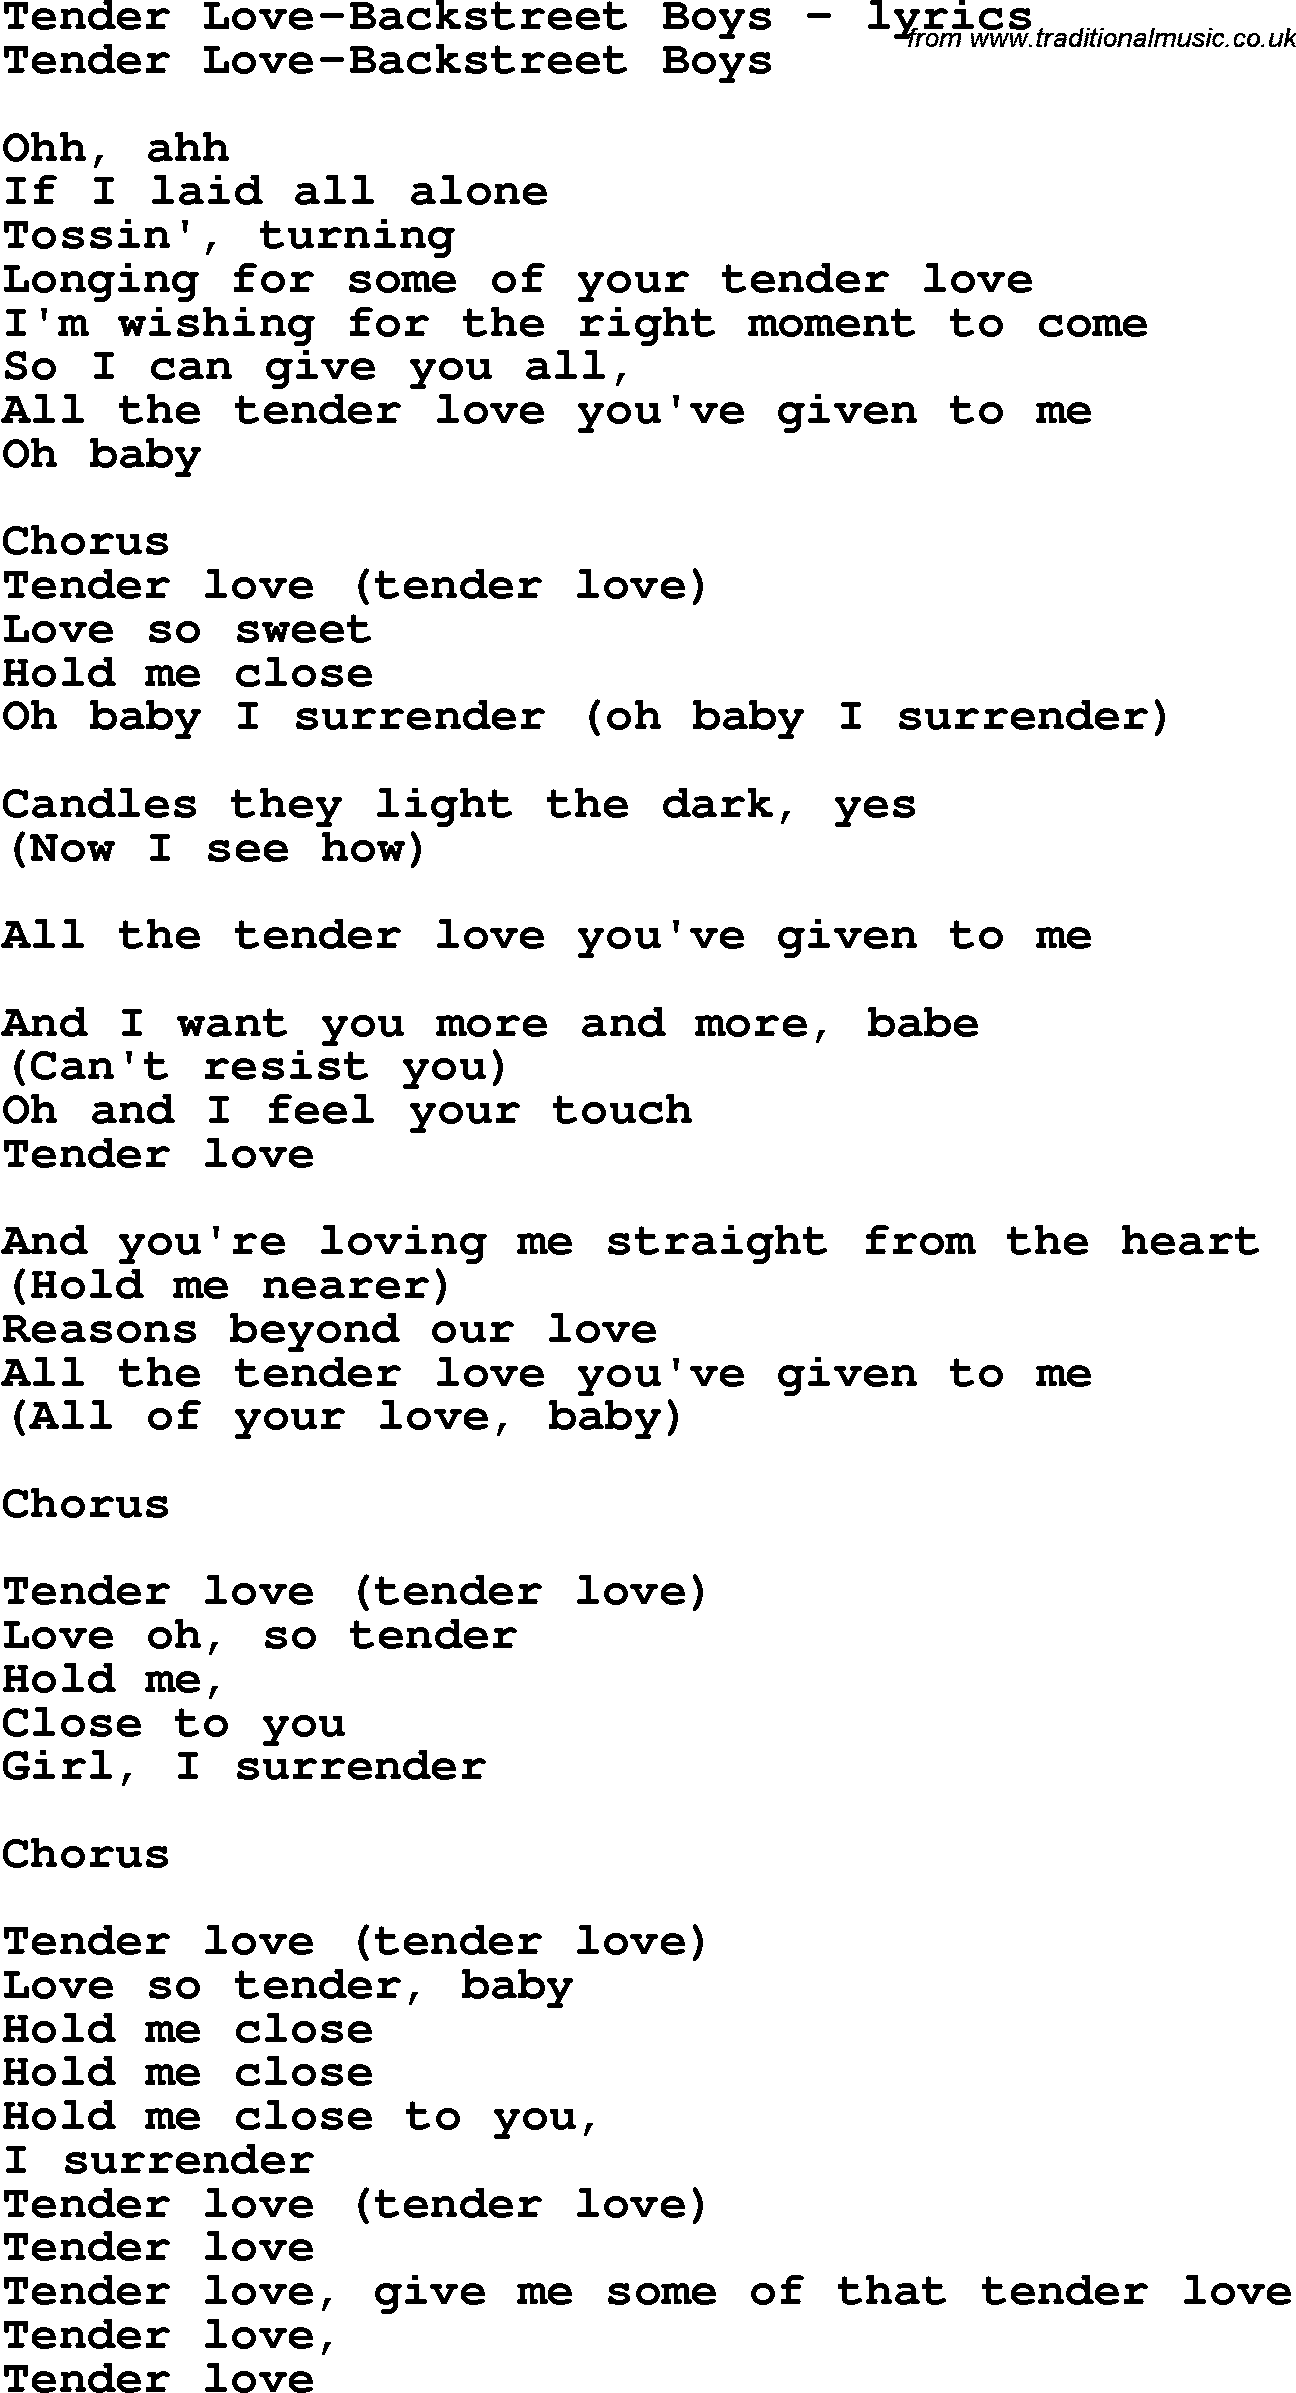 Love Song Lyrics for: Tender Love-Backstreet Boys